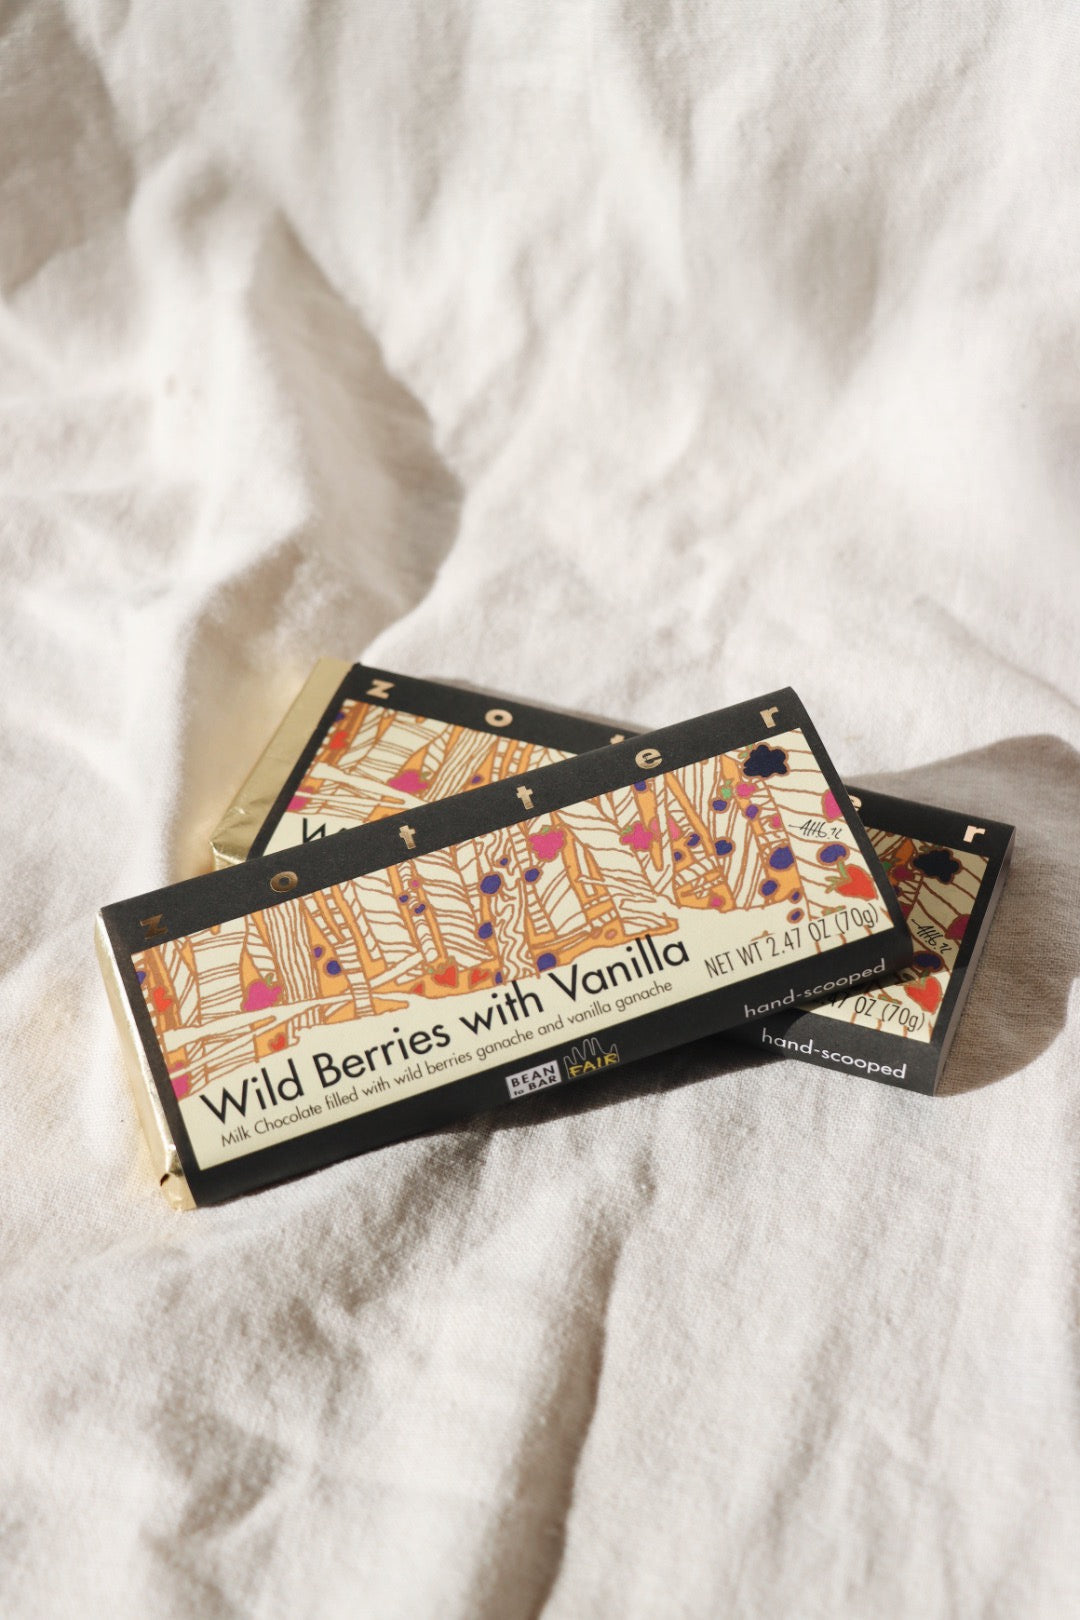 Wild Berries with Vanilla Hand-Scooped Chocolate Bar